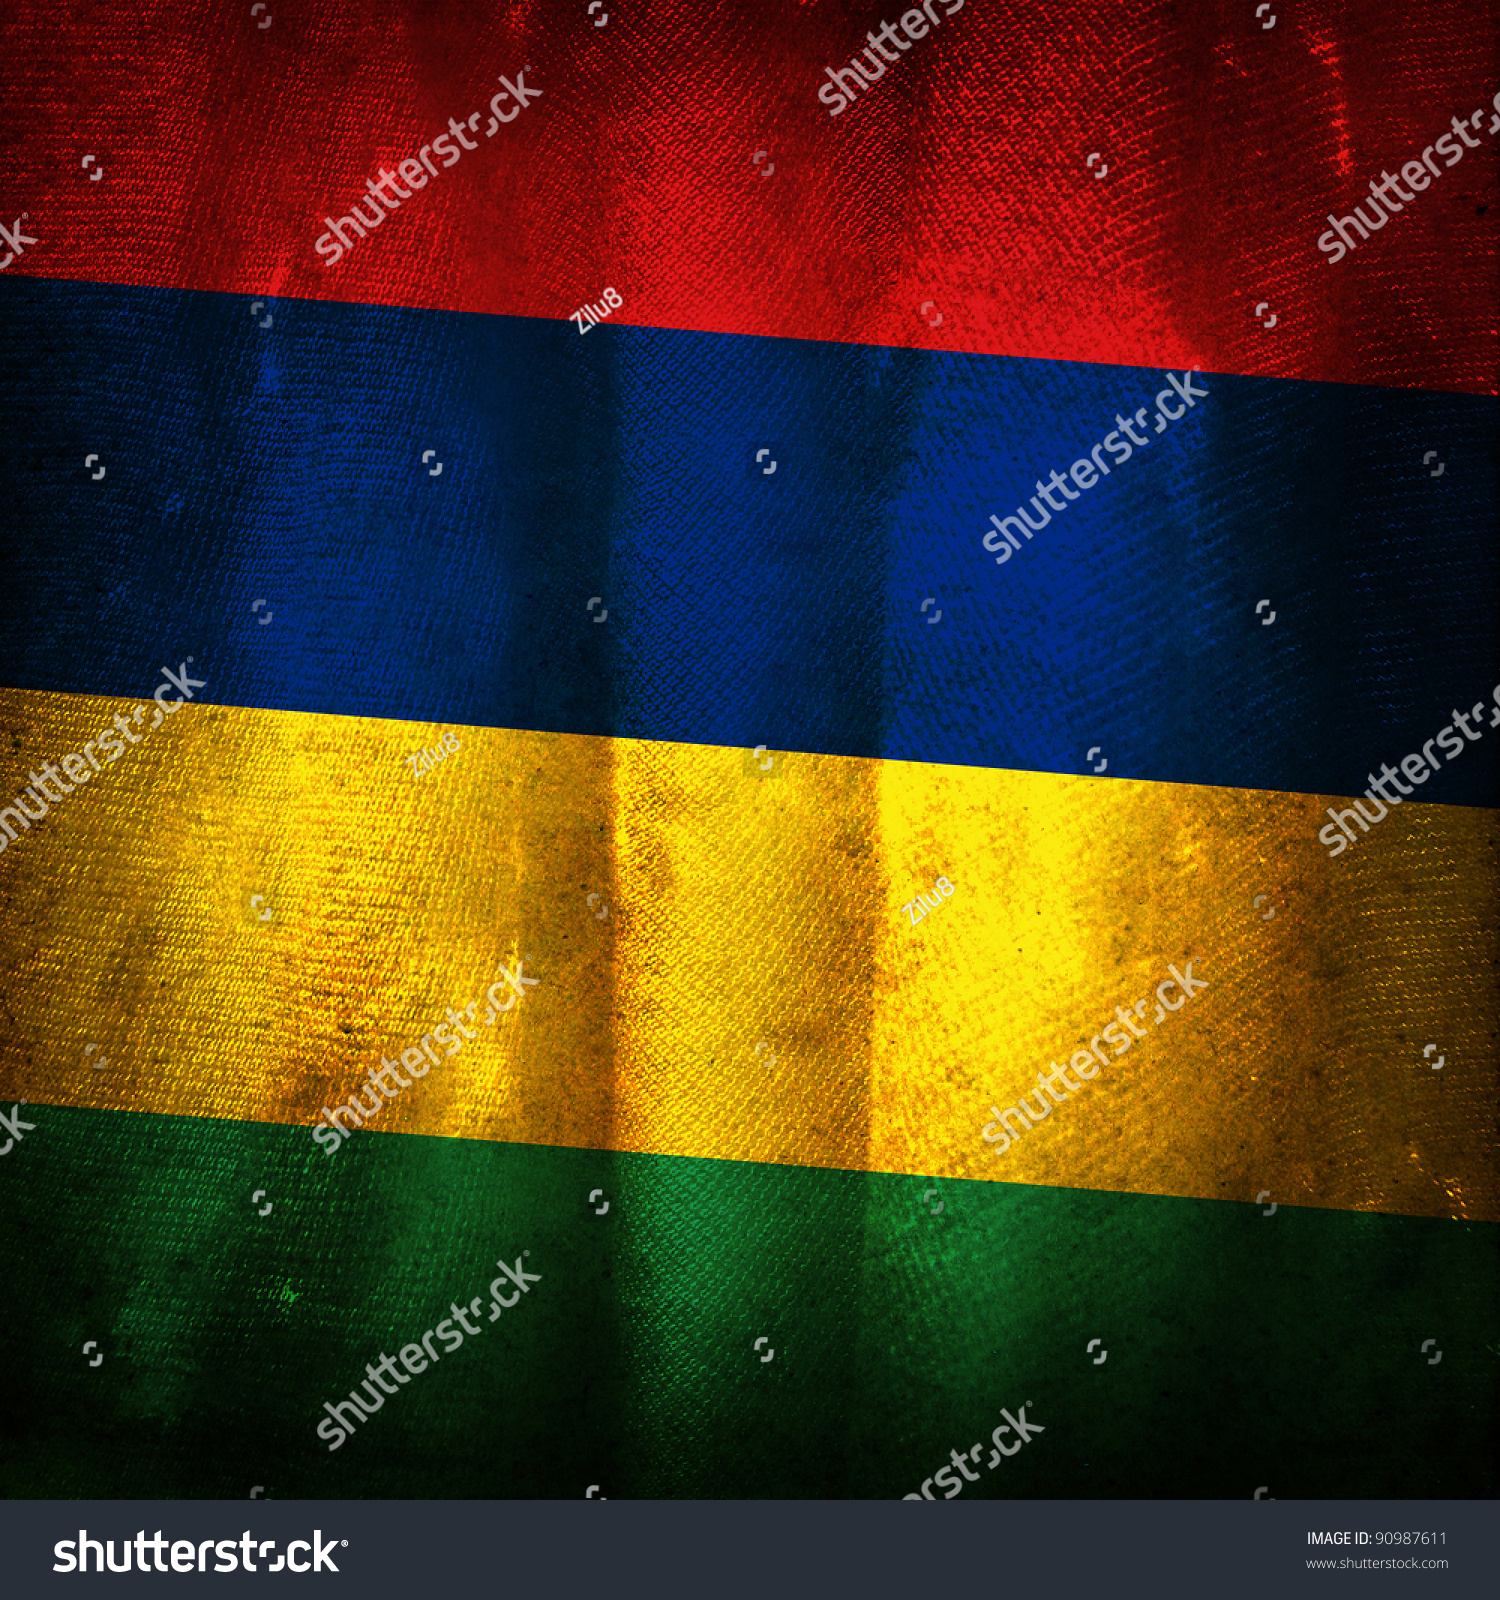 Mauritius grunge flag photo